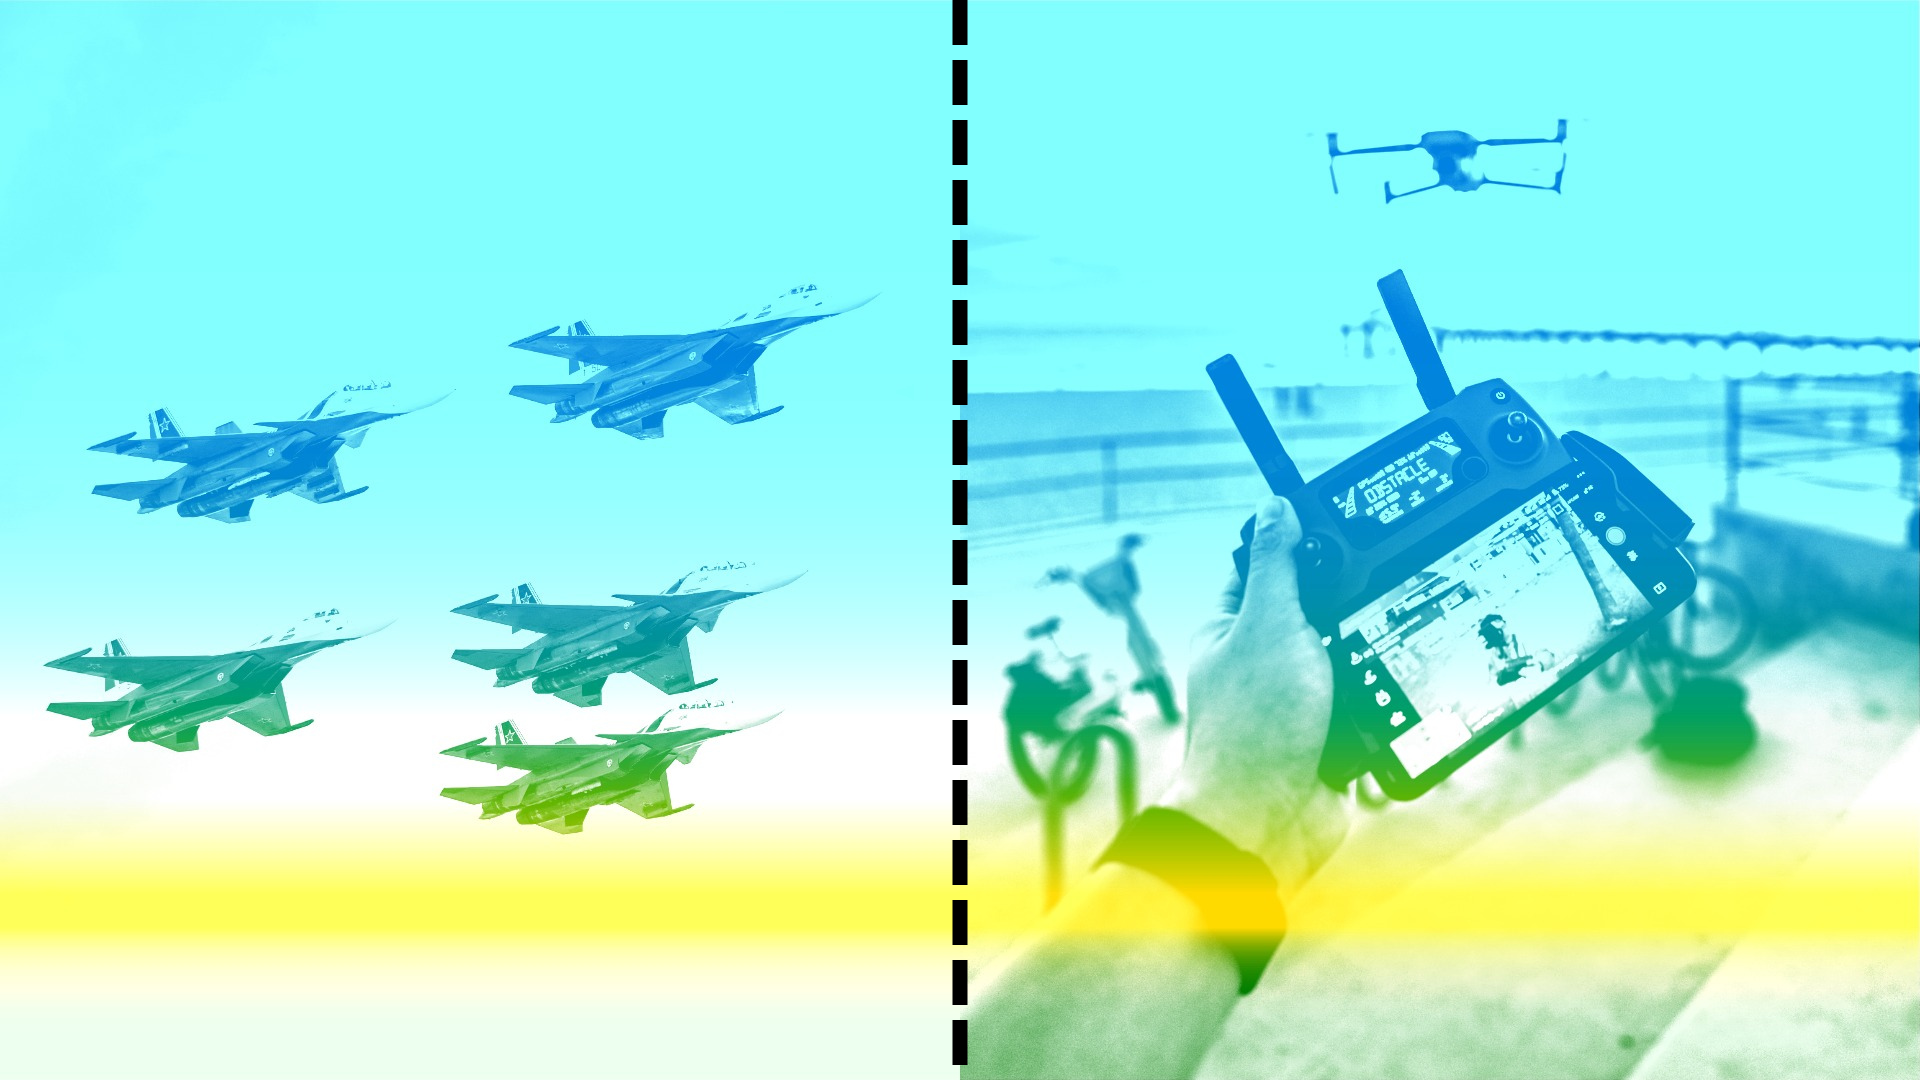 изображение парка военных самолетов слева. Справа изображение рук человека, управляющего дроном, видимым вдалеке. Изображения разделены перфорированной линией.